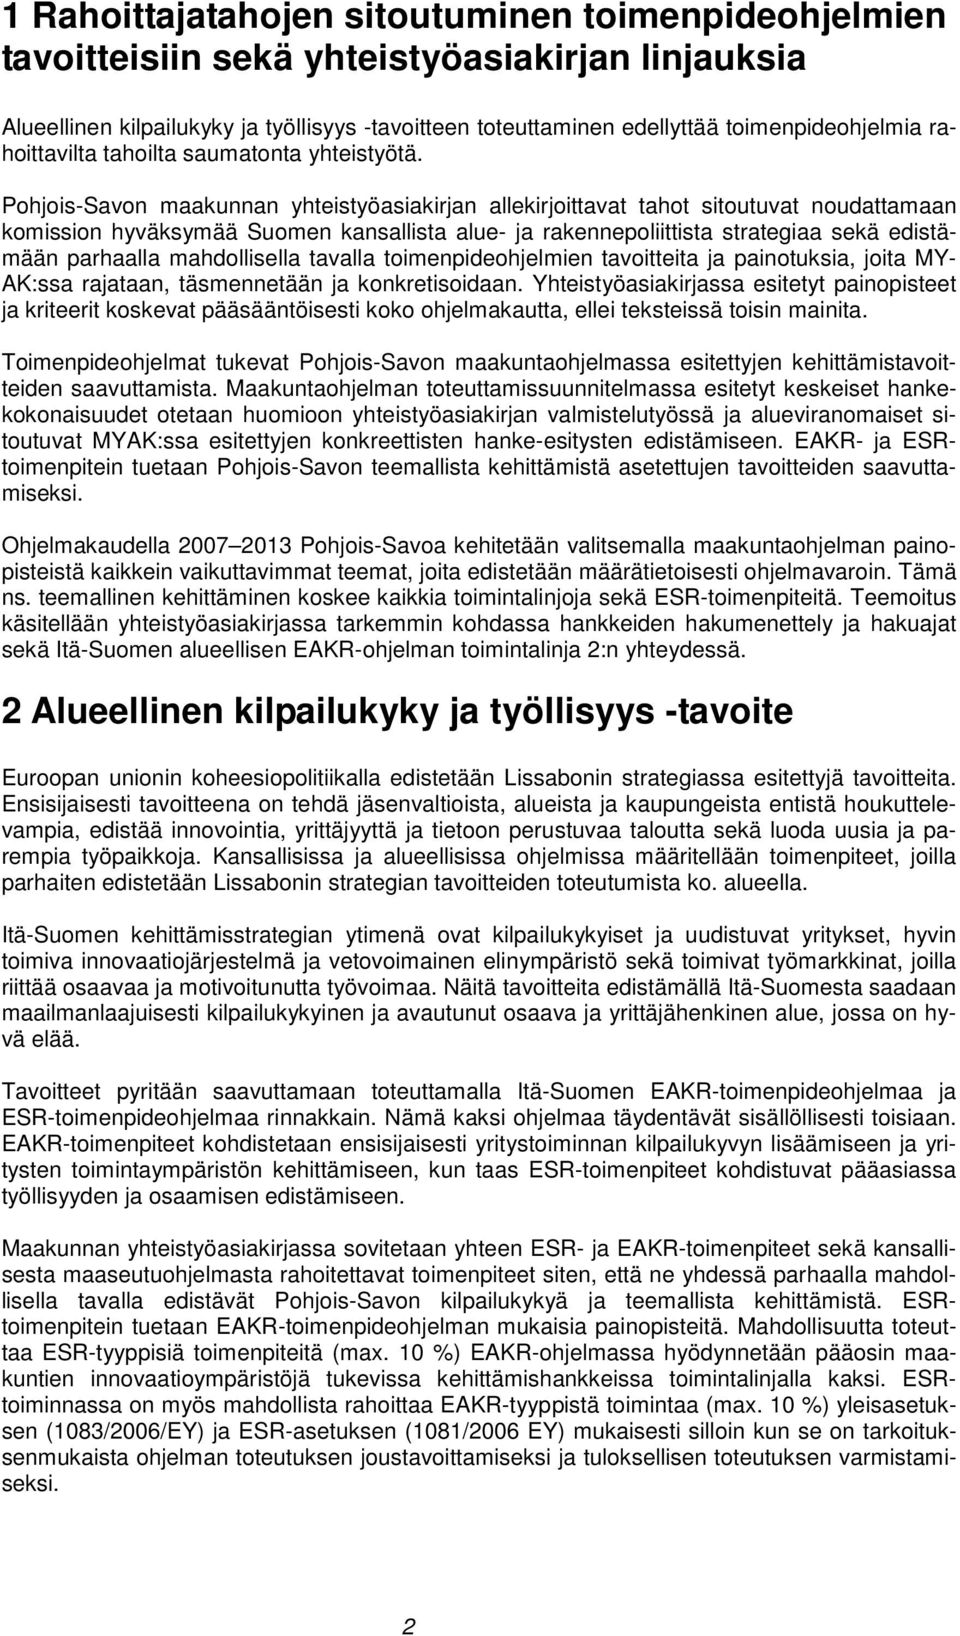 Pohjois-Savon maakunnan yhteistyöasiakirjan allekirjoittavat tahot sitoutuvat noudattamaan komission hyväksymää Suomen kansallista alue- ja rakennepoliittista strategiaa sekä edistämään parhaalla